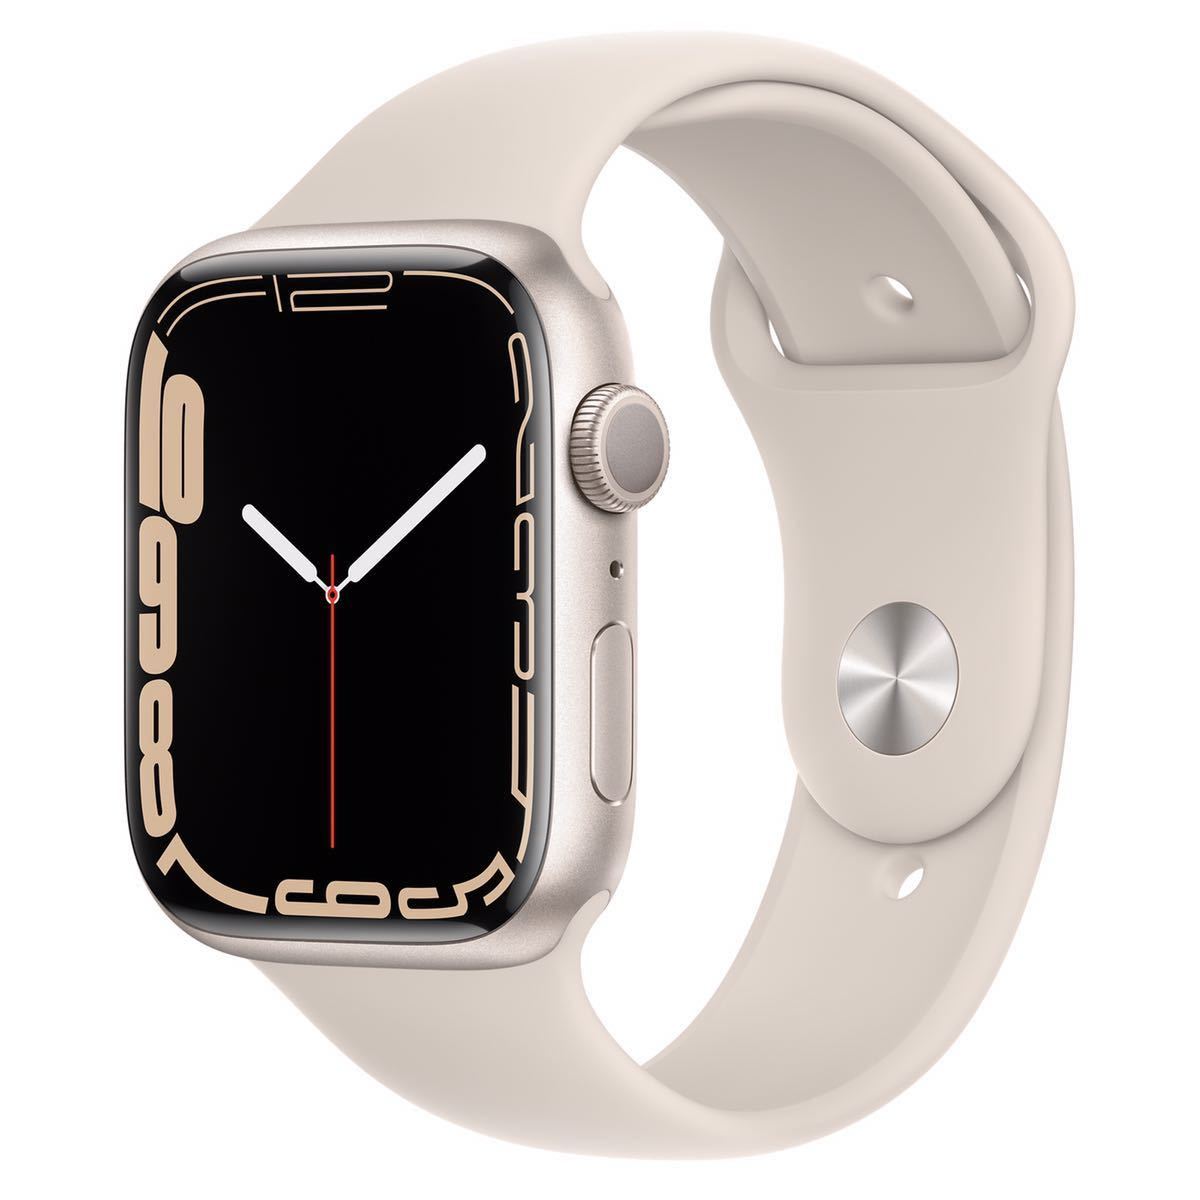 50％割引値頃 Apple Watch Series 7 GPSモデル 45mm スターライトアルミニウムケースとスターライトスポーツバンド  レギュラー AppleWatch 手元にあり スマートウォッチ、ウェアラブル端末 家電、AV、カメラ-SHOW8TSUCHIYA.COM